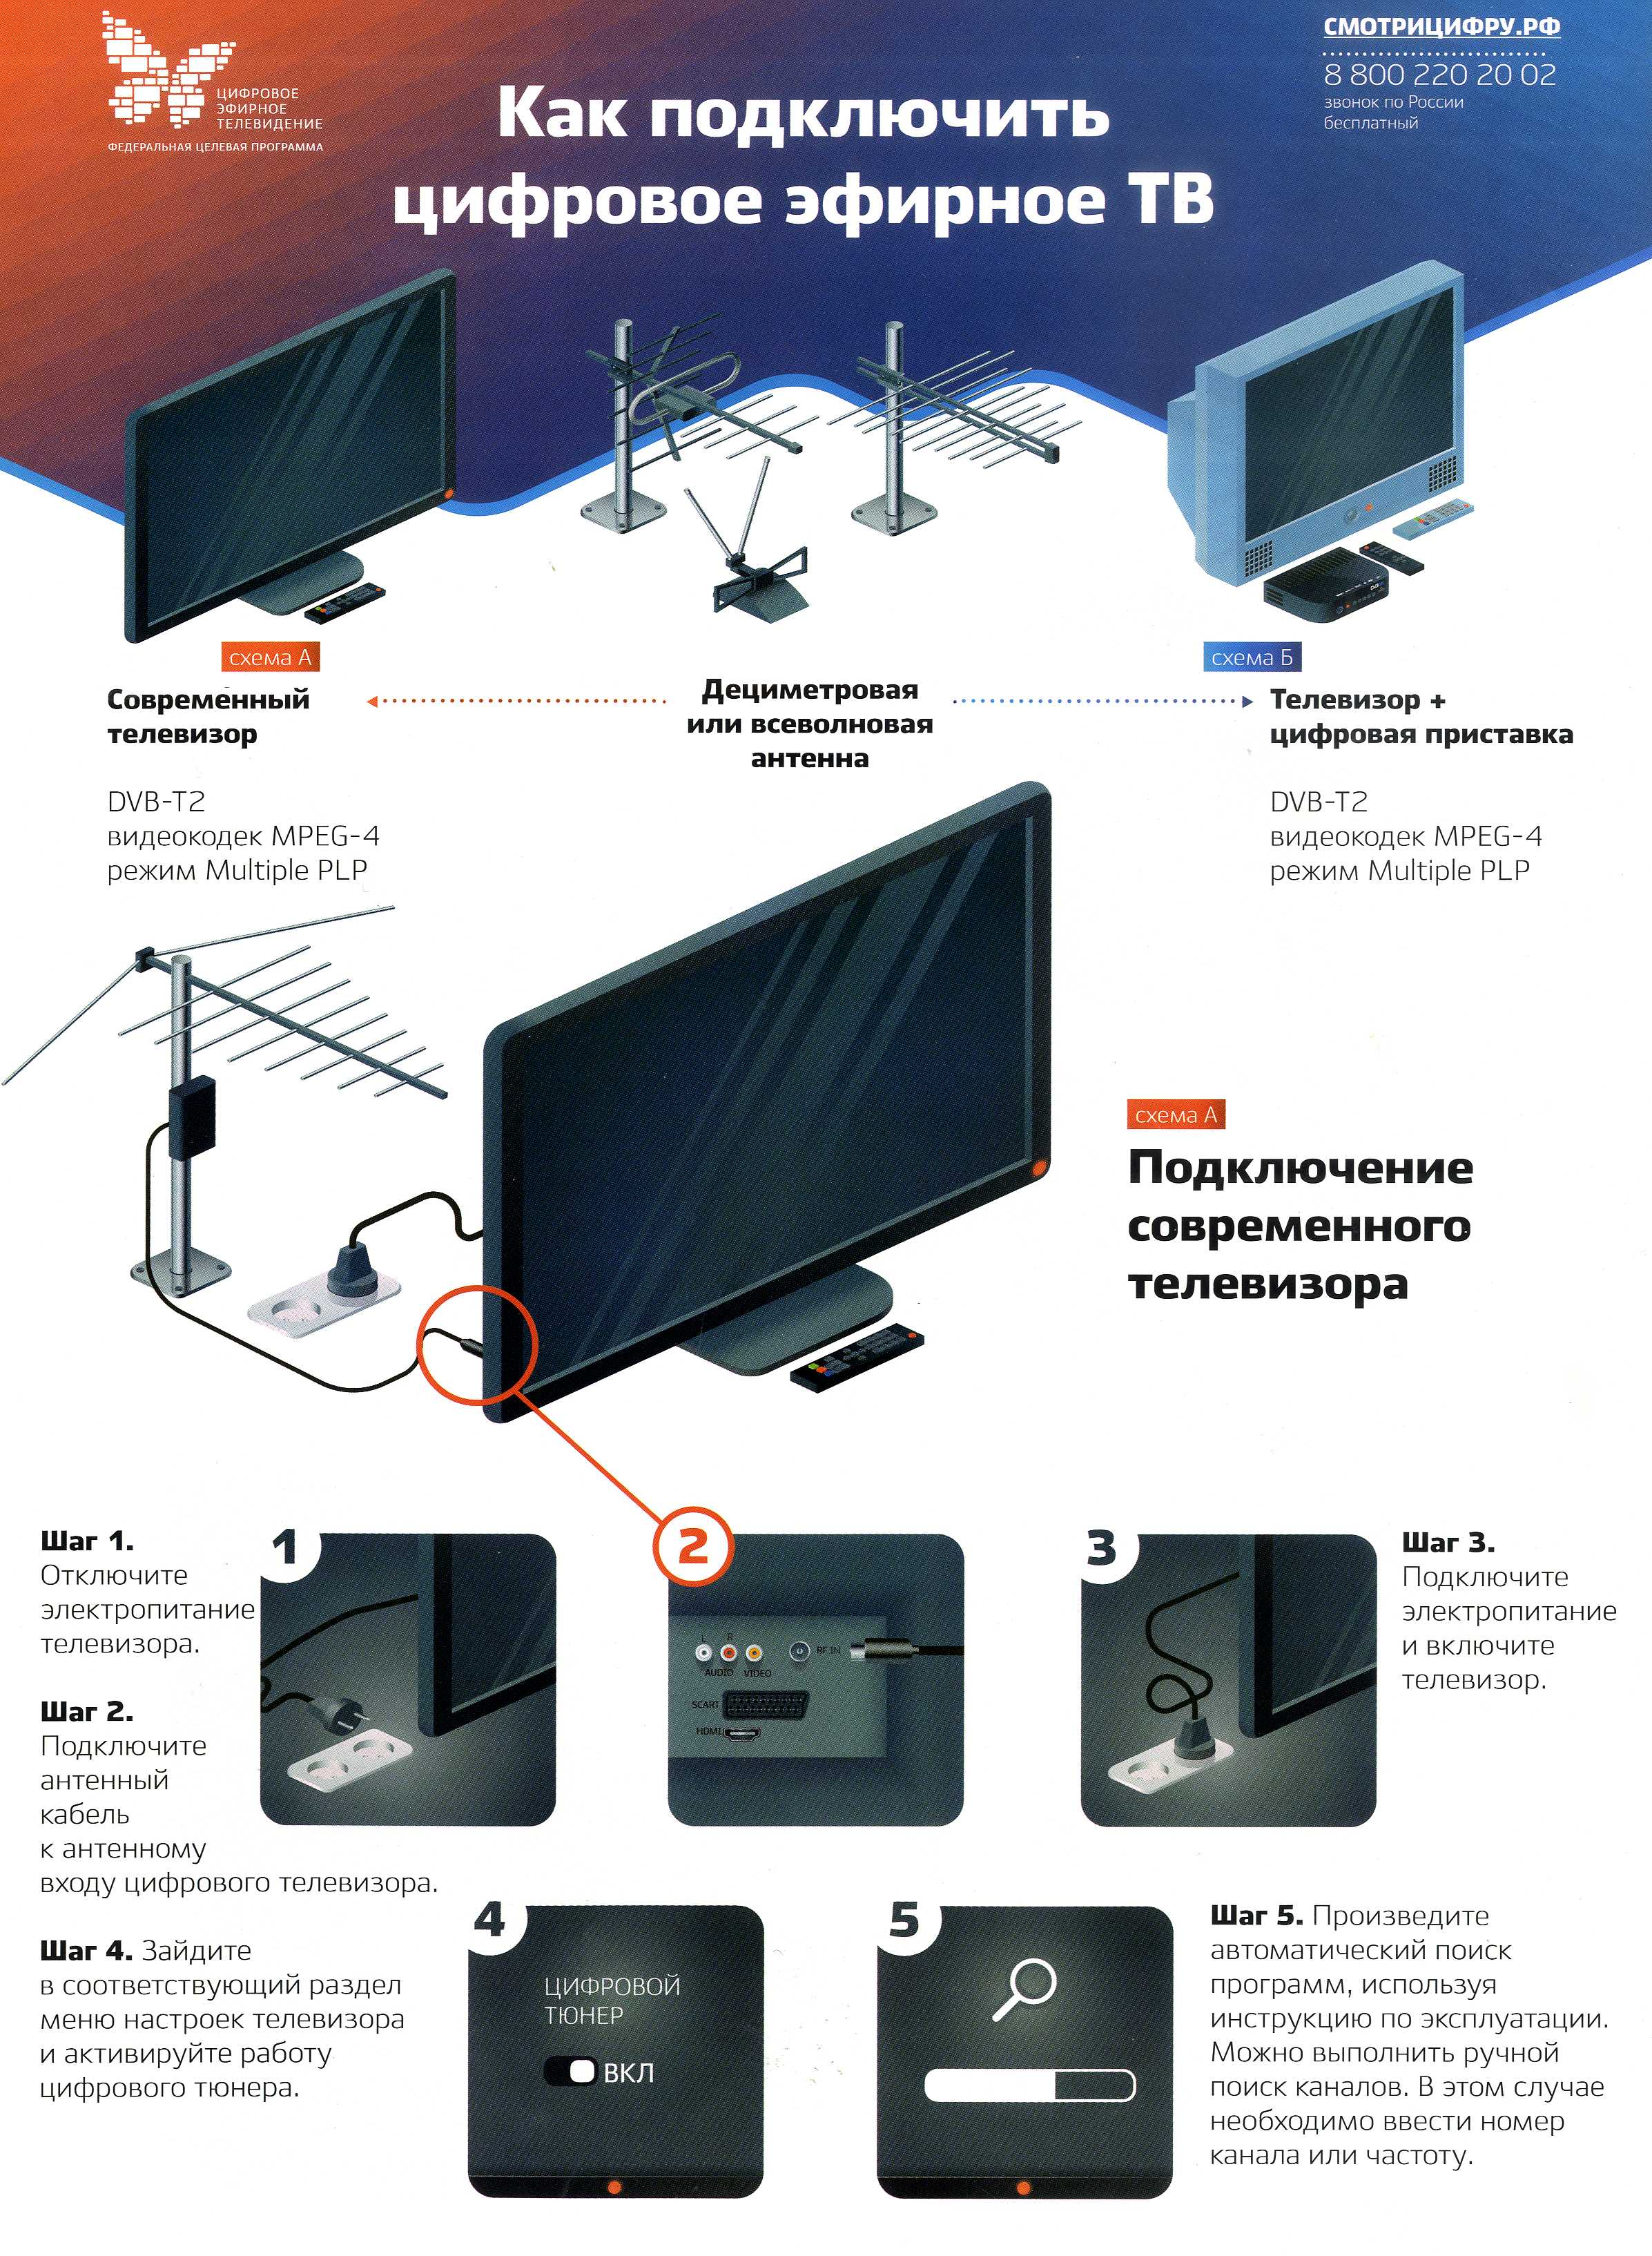 Как подключить телевизор с комнатной антенной